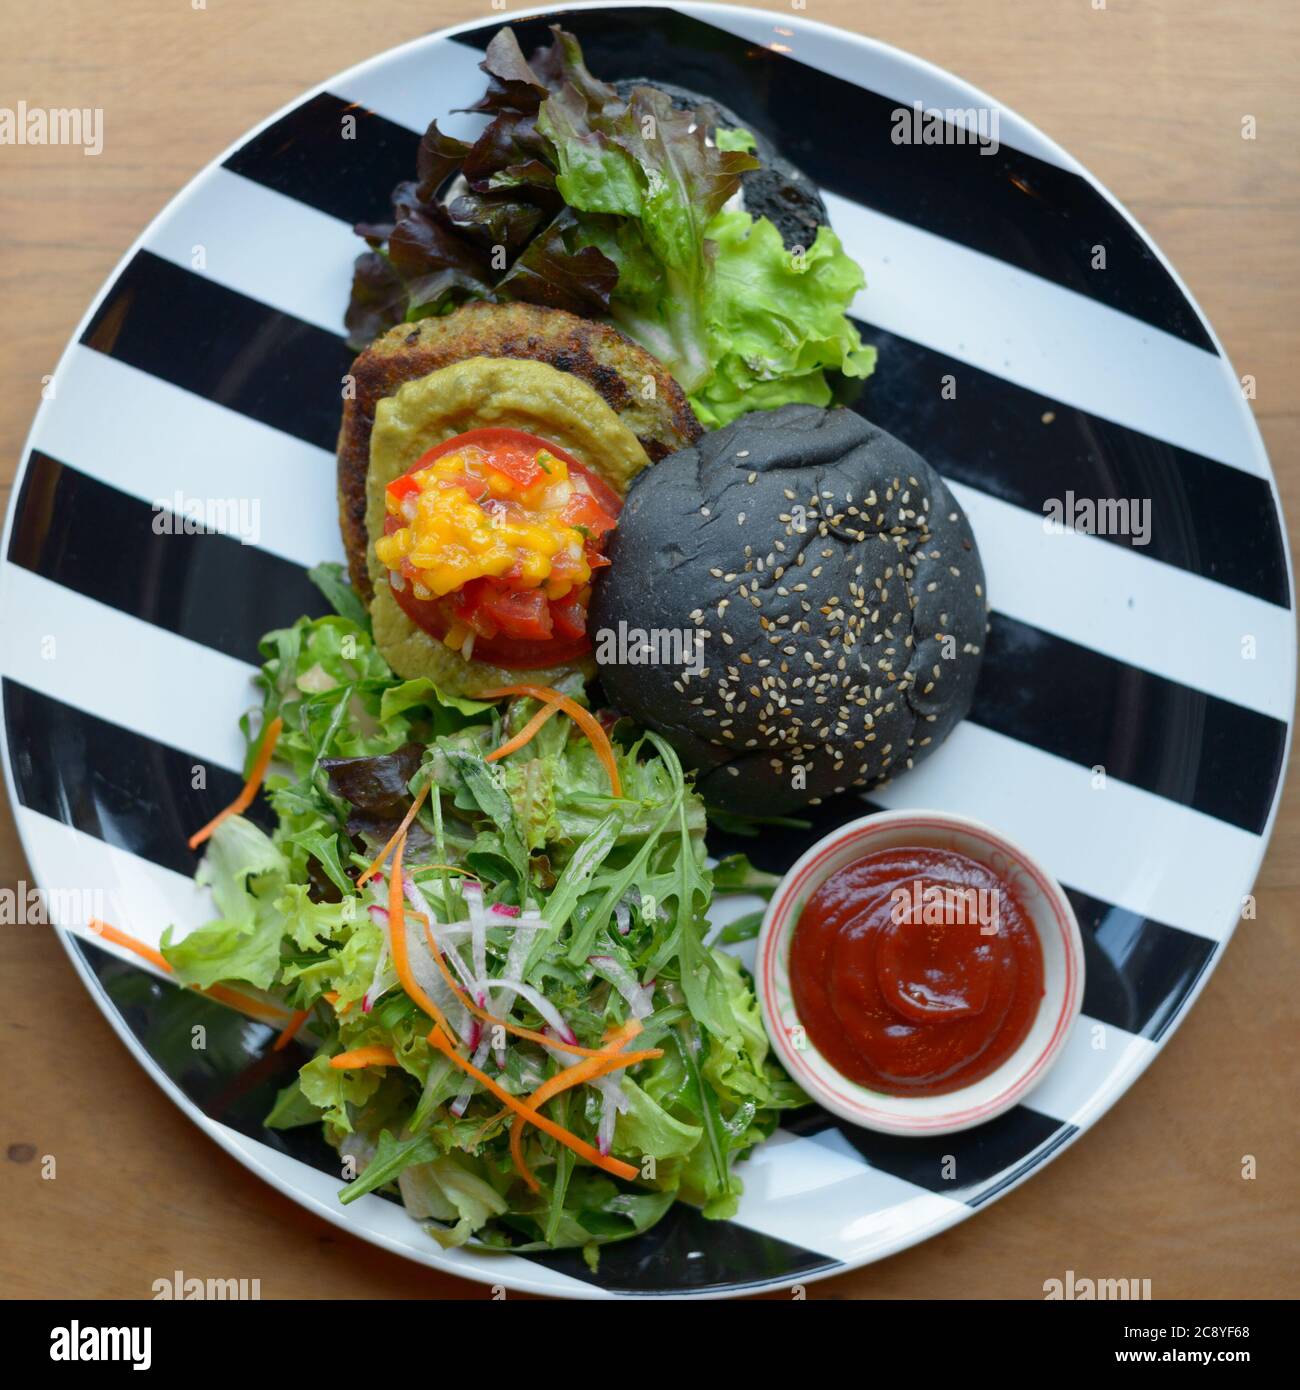 Vue de dessus de délicieux hamburger noir avec salade Banque D'Images